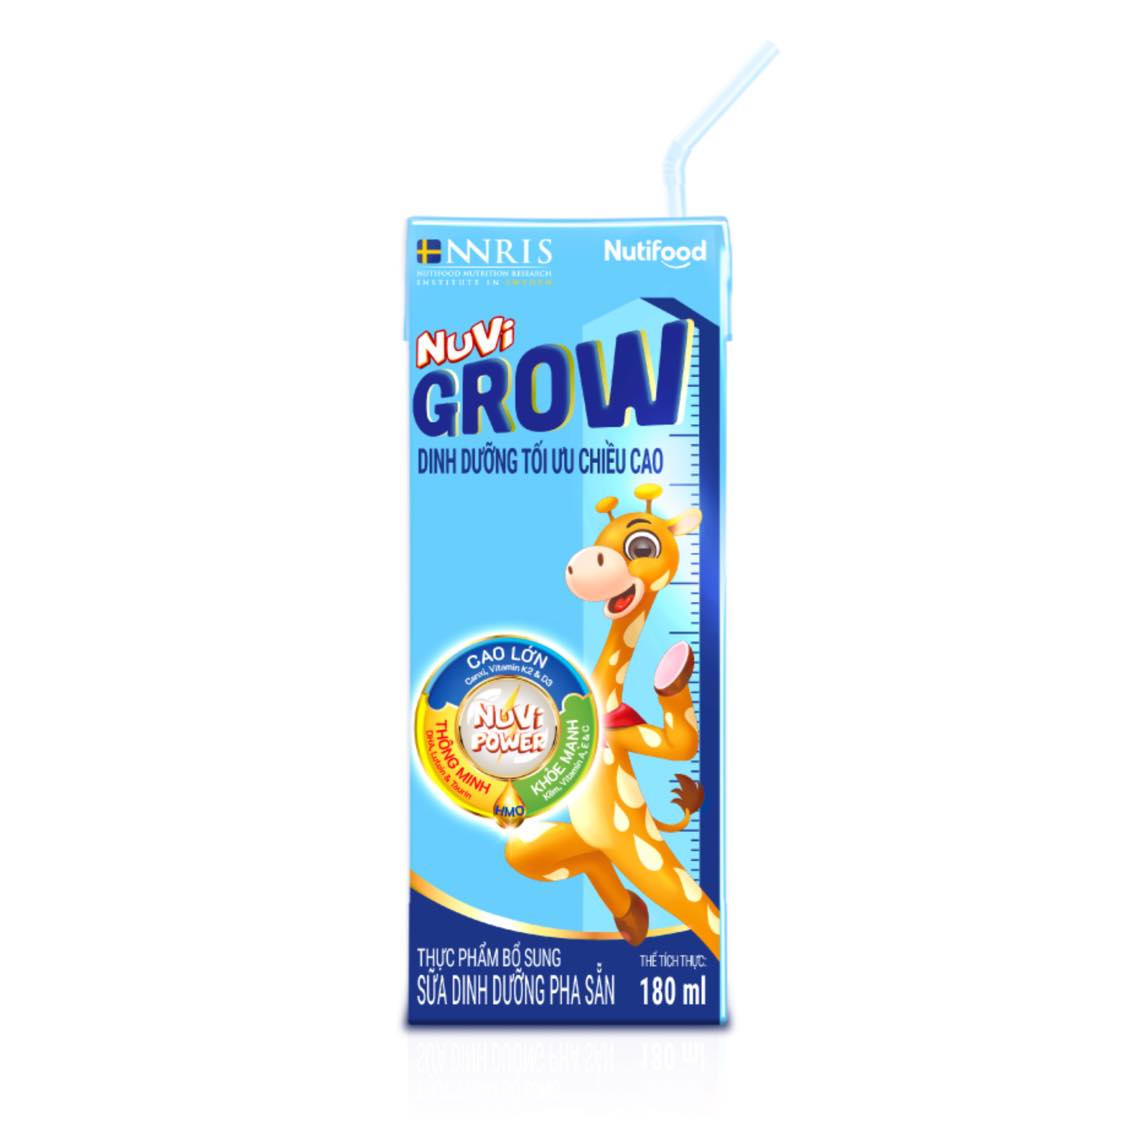 Thùng sữa pha sẵn Nuvi Grow 180ml - Dinh dưỡng tối ưu chiều cao, thông minh, khoẻ mạnh cho bé trên 1 tuổi